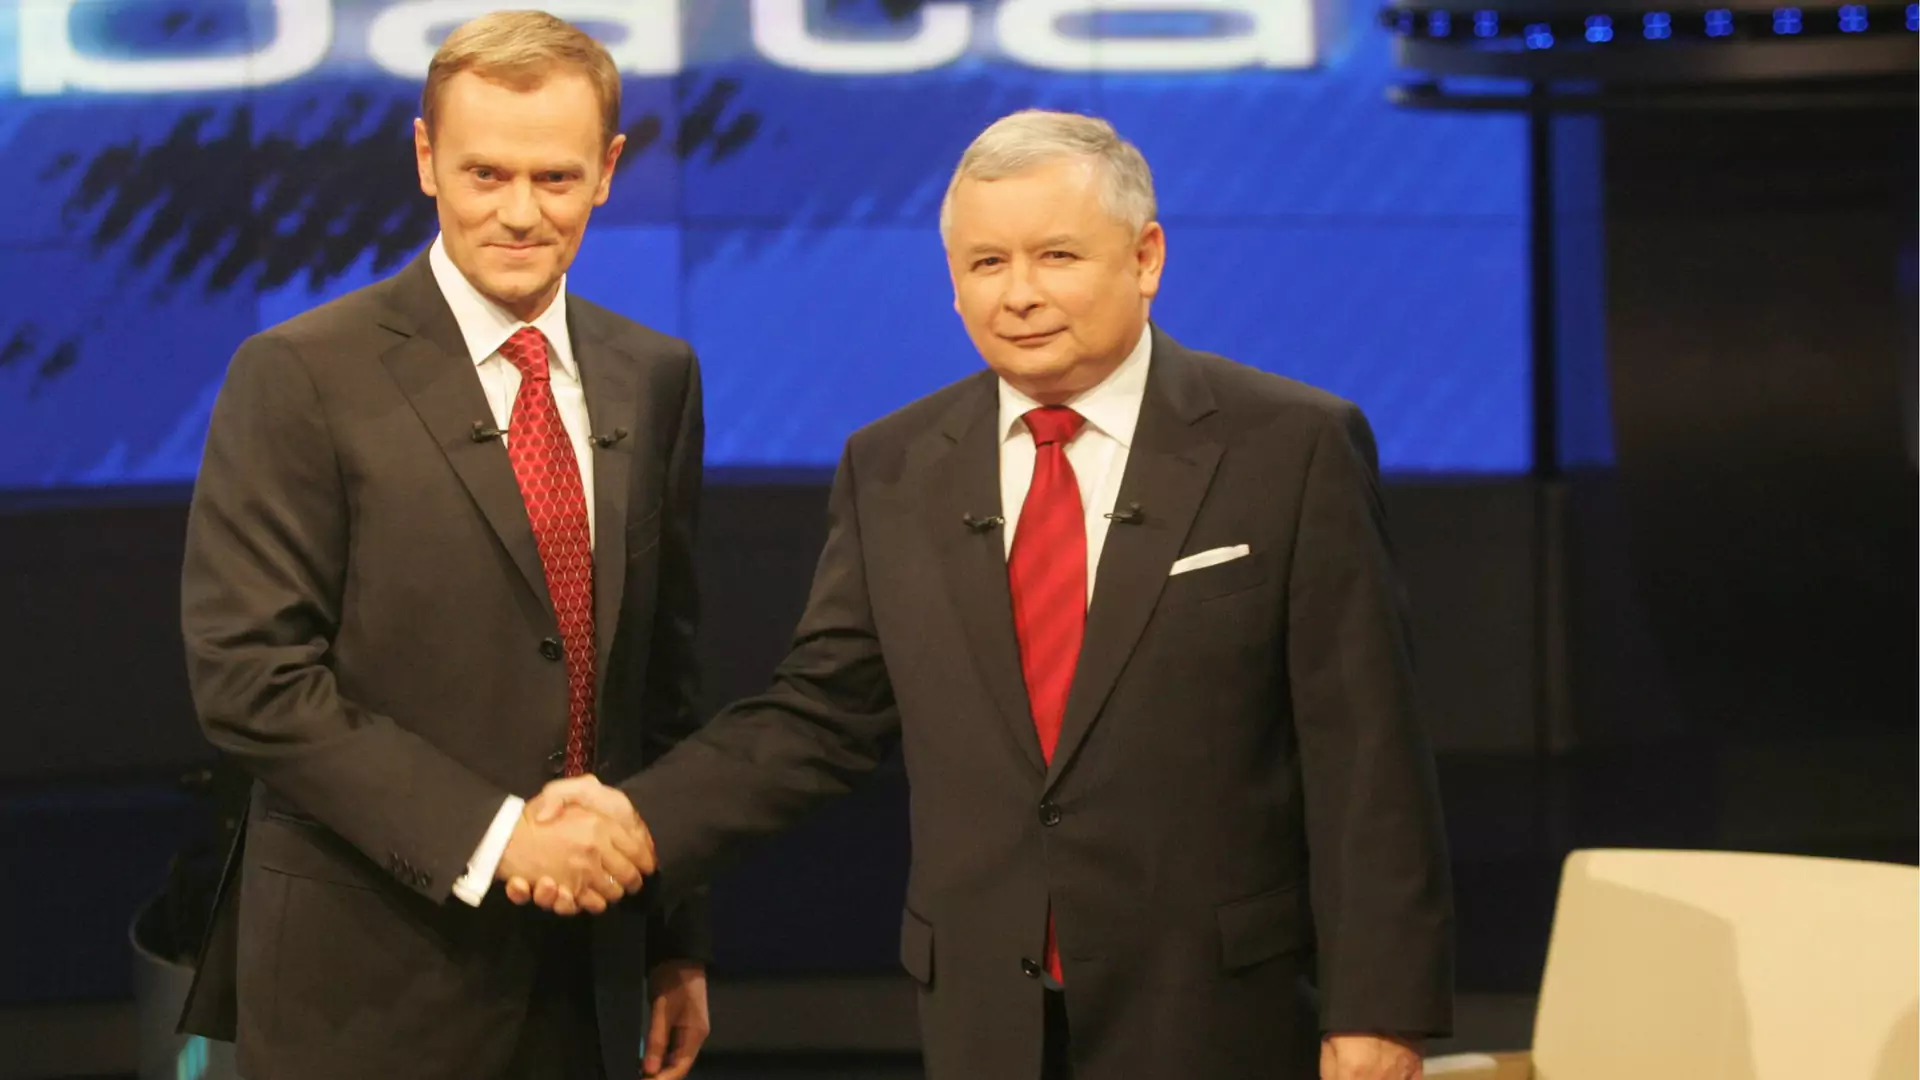 Debata Kaczyński i Tusk z 2007 r. Prezes PiS mylił się mniej niż szef PO